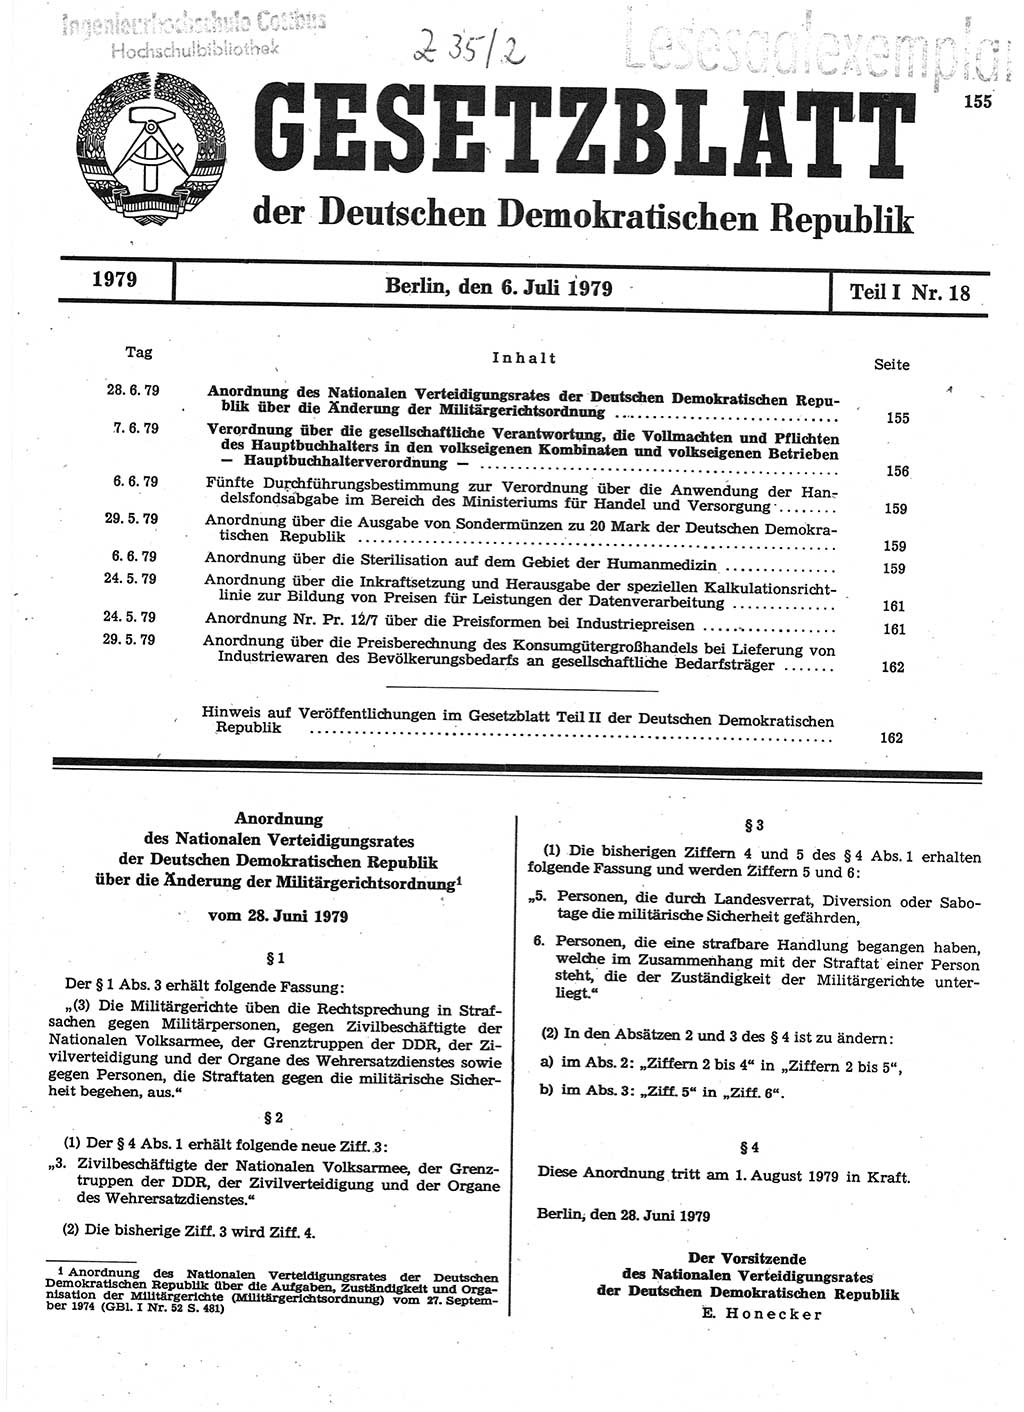 Gesetzblatt (GBl.) der Deutschen Demokratischen Republik (DDR) Teil Ⅰ 1979, Seite 155 (GBl. DDR Ⅰ 1979, S. 155)